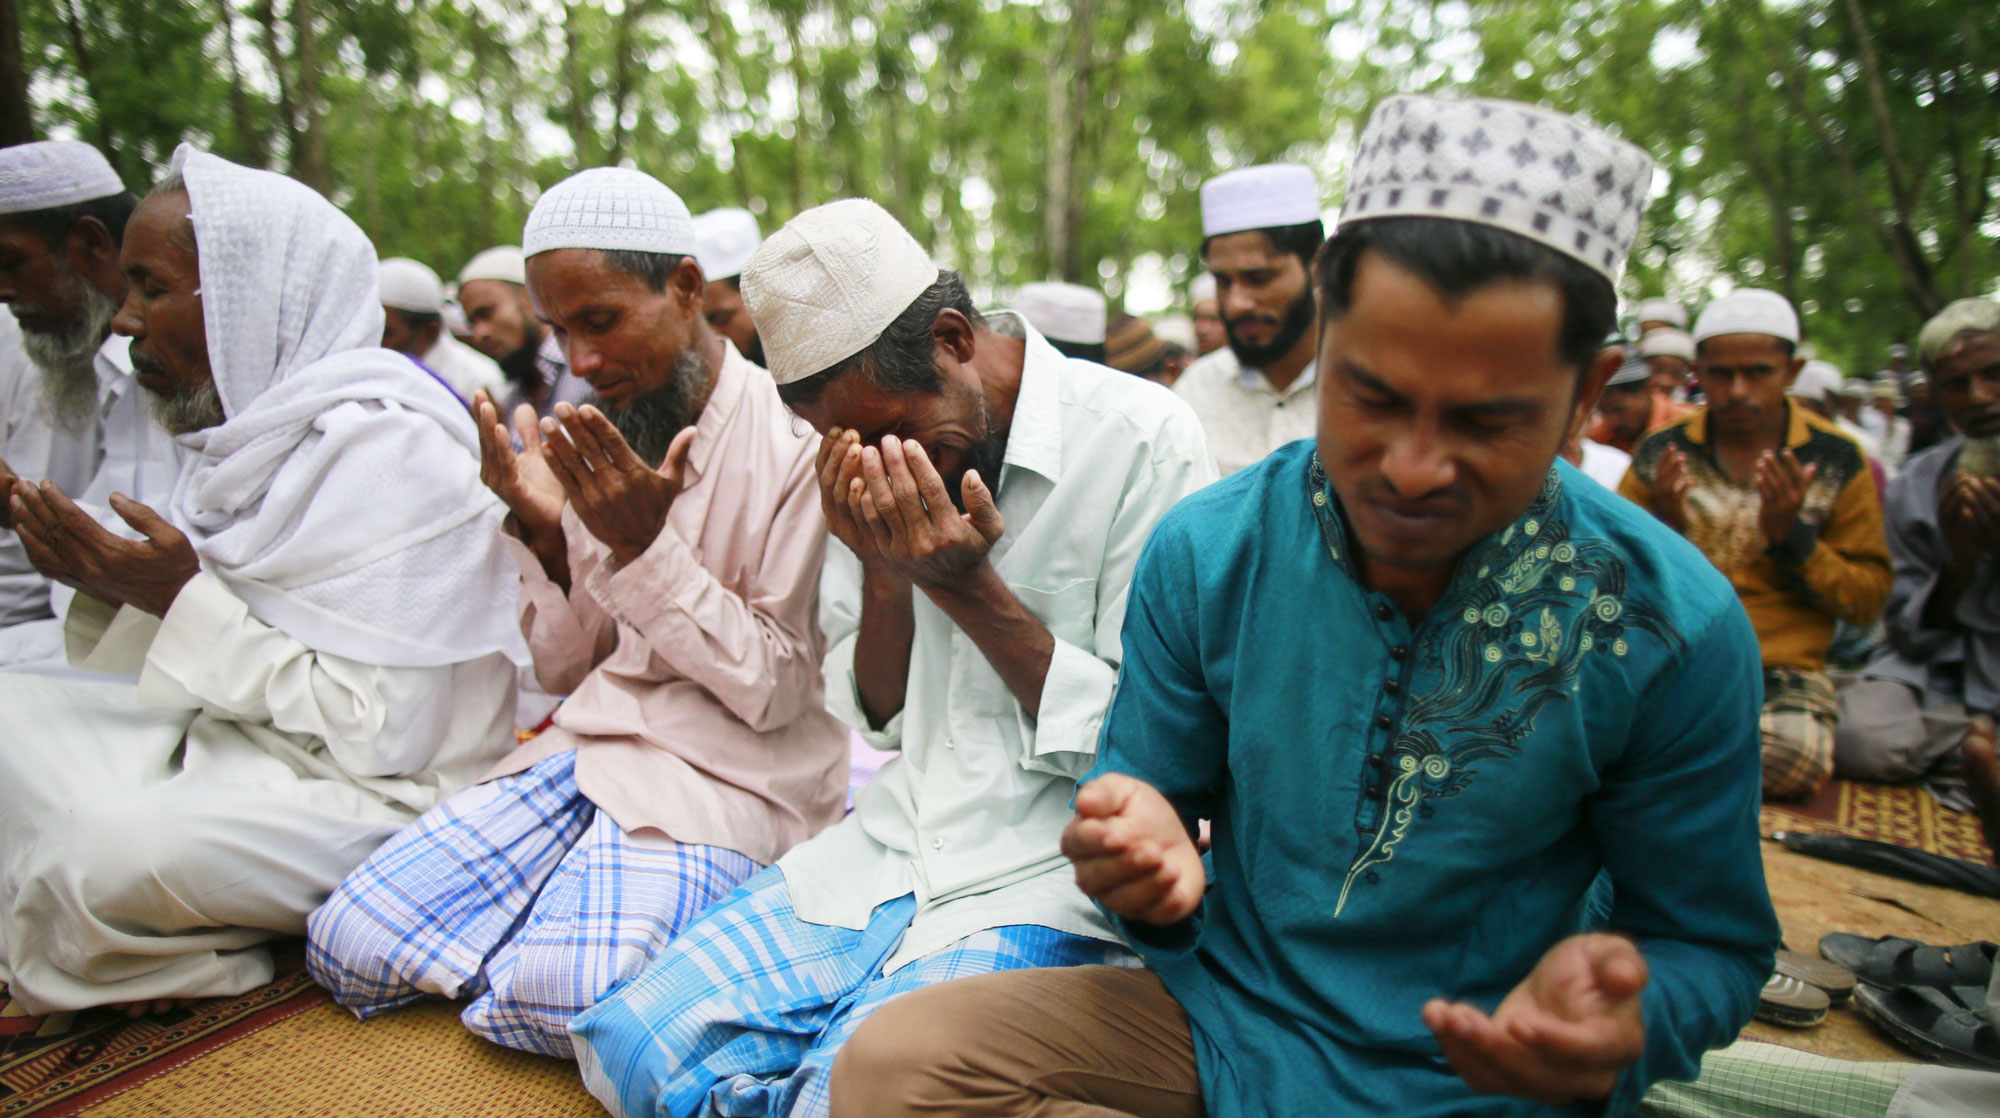 На волне сочувствия к единоверцам в Мьянме появились аферисты, которые под благовидным предлогом помощи мусульманам собирают деньги через популярные мессенджеры undefined